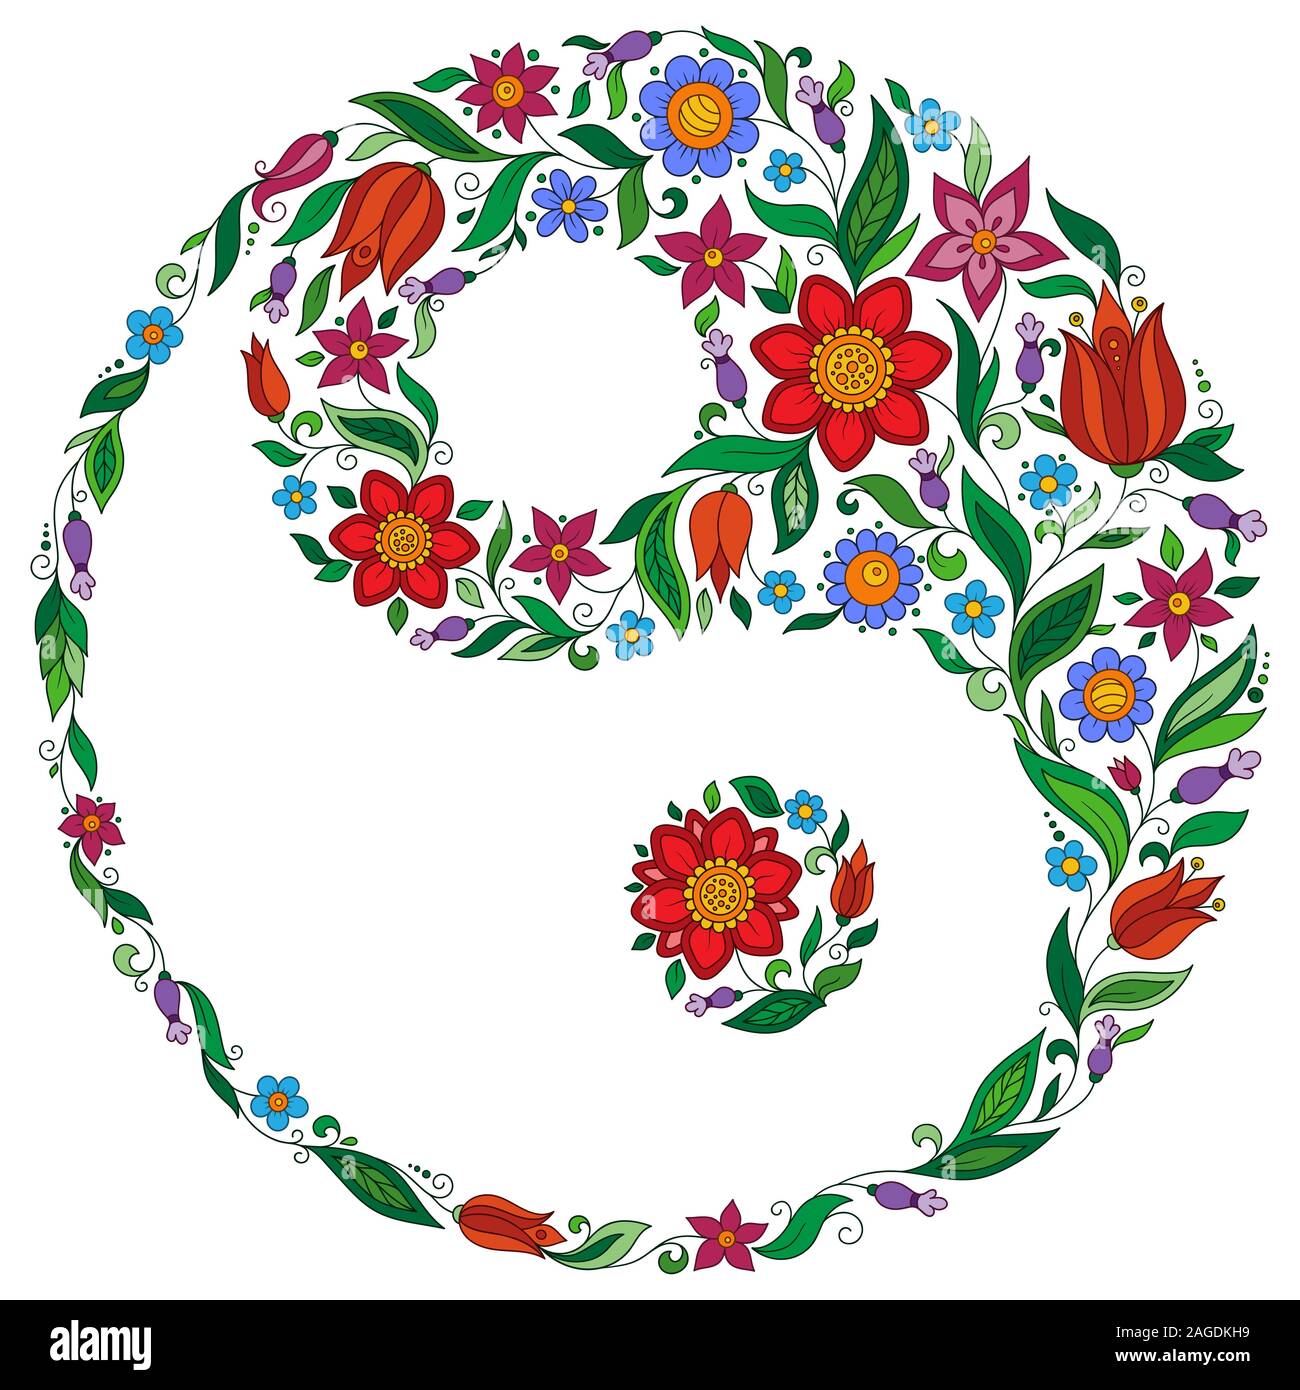 Disegnato a mano fiore ornato nella corona di foglie con Yin e yang Tao simbolo. Vettore isolato illustrazione. Elemento di invito. Tatuaggio, astrologia, alc Illustrazione Vettoriale